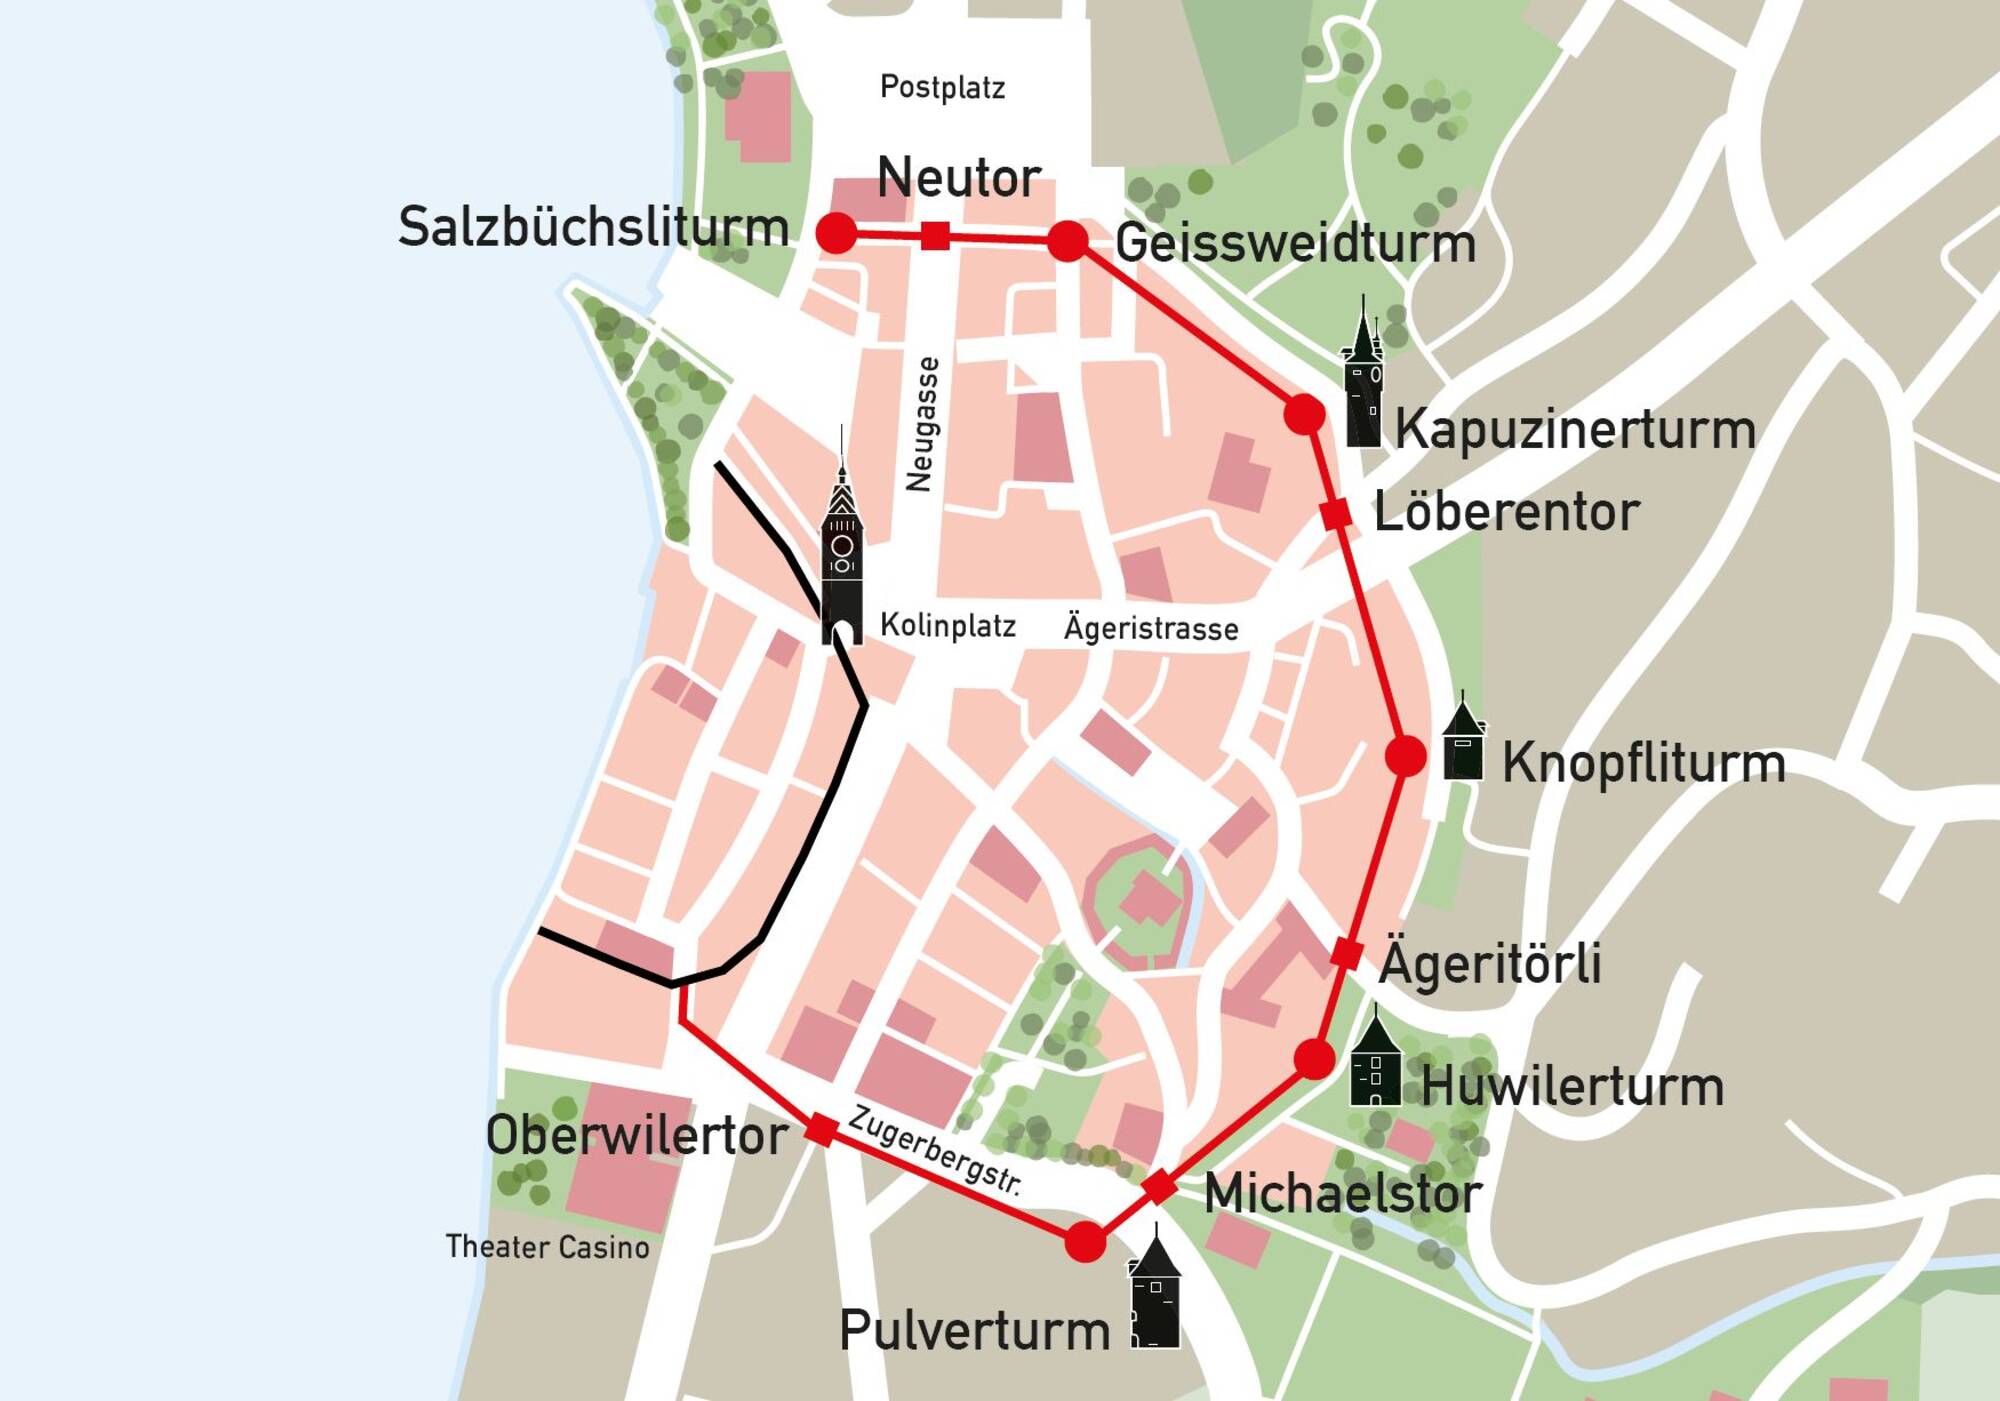 Stadt Zug saniert Stadtmauer beim Huwilerturm